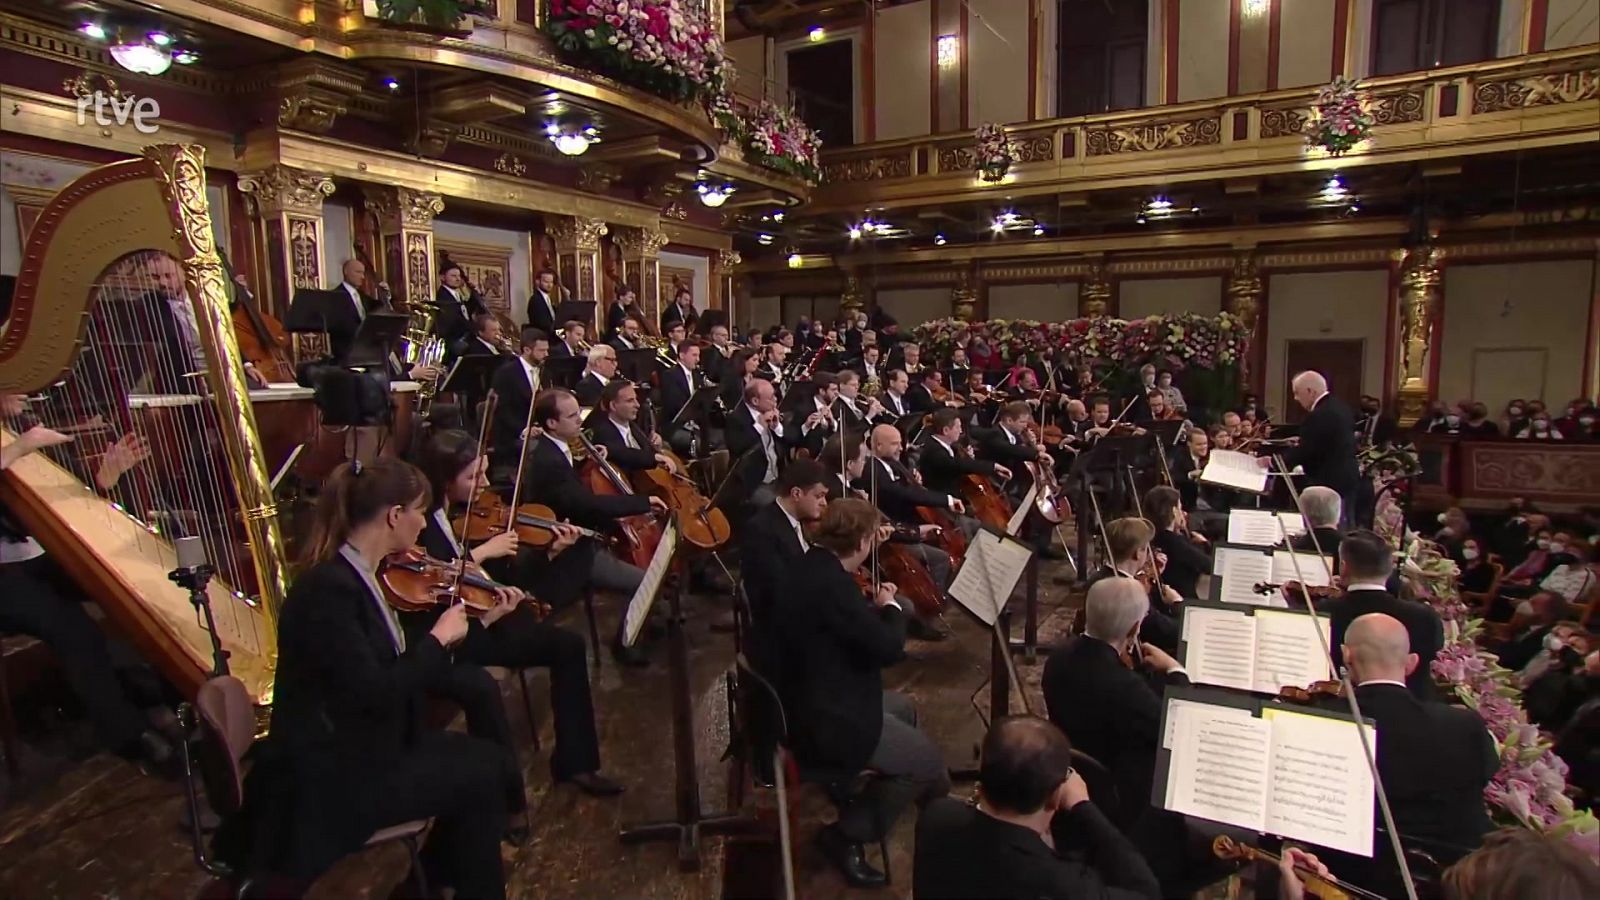 Concierto de Año Nuevo 2022 - Orquesta Filarmónica de Viena